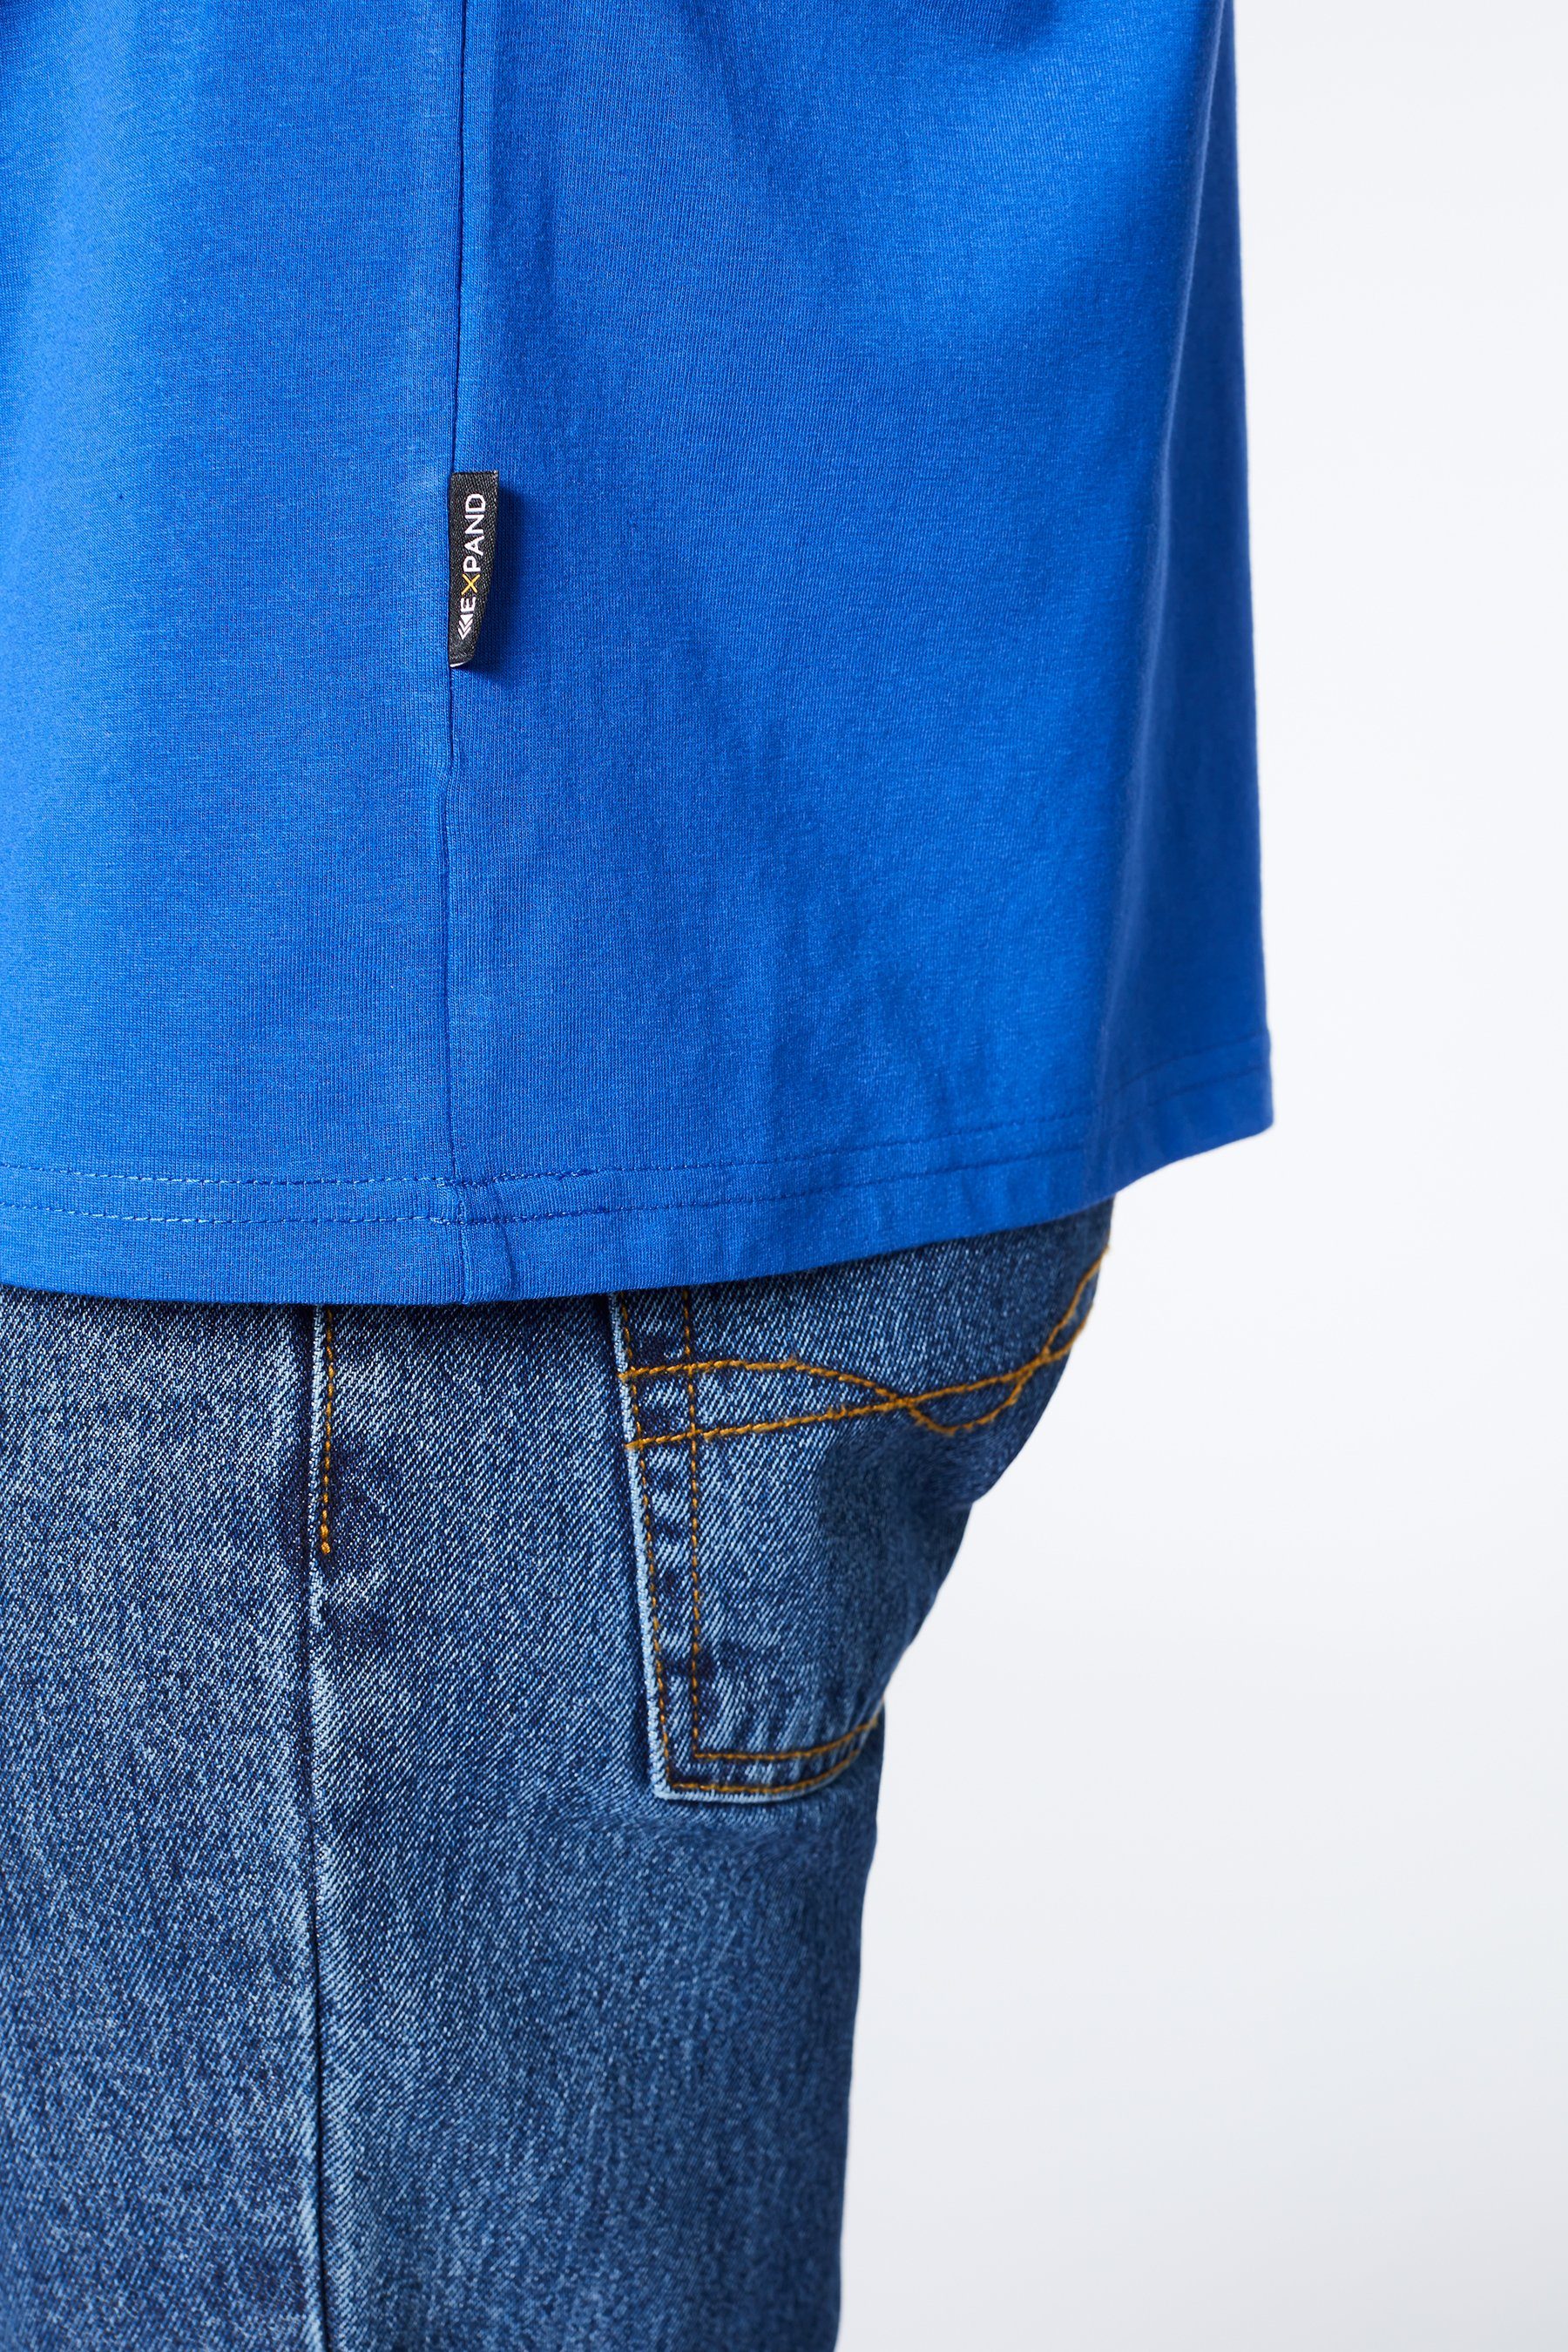 Übergröße in Expand T-Shirt ultramarinblau